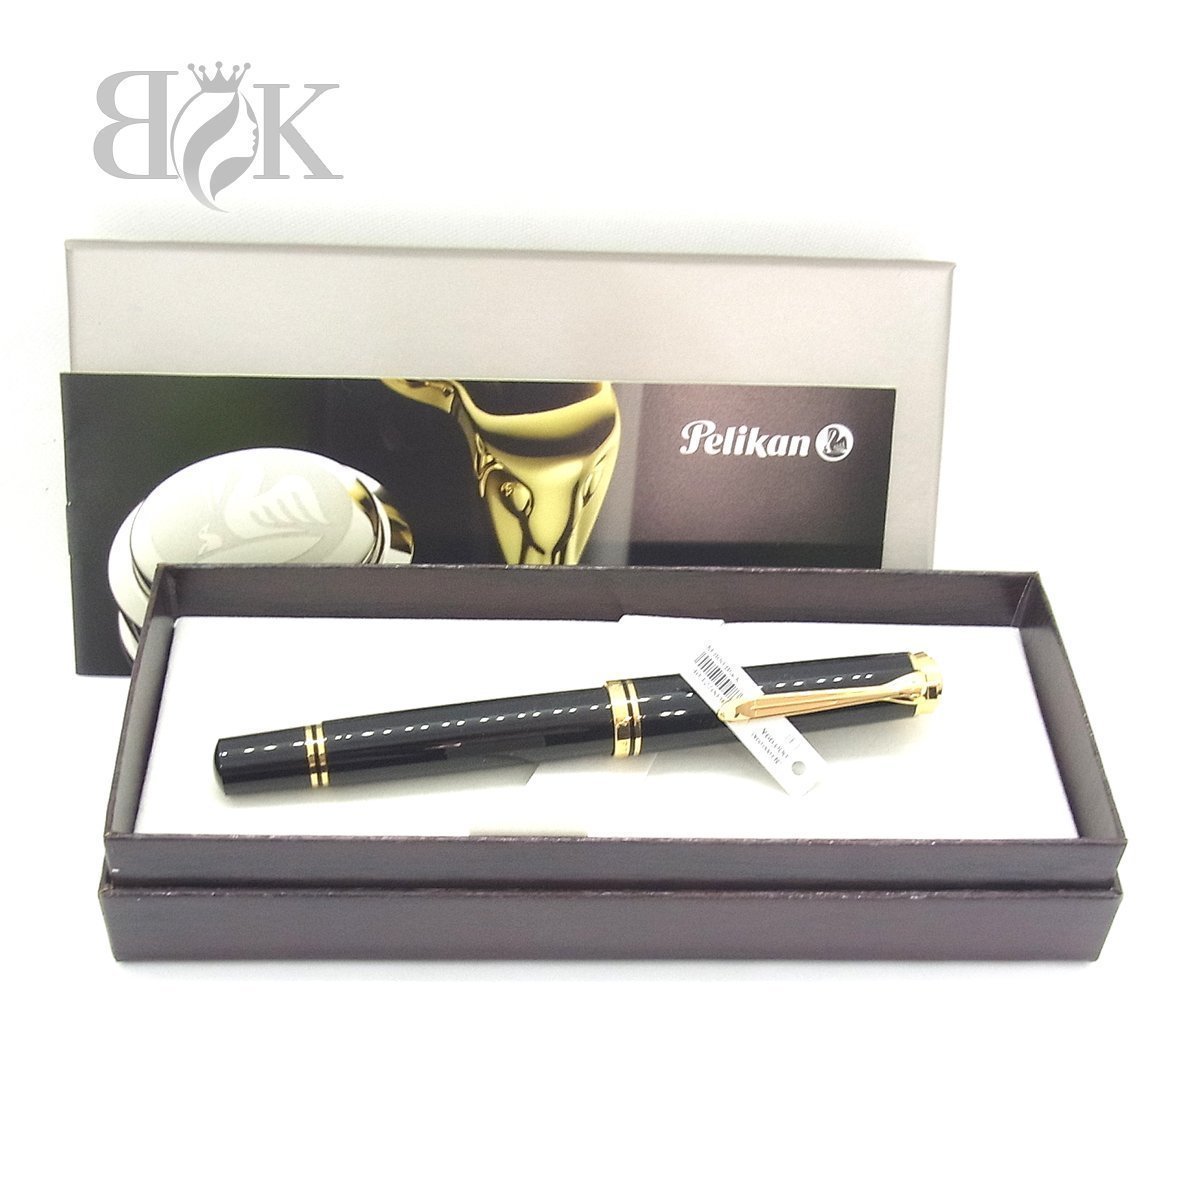 最新な 万年筆 スーベレーン 黒 M800 ペリカン 未使用品 ○ F ペリカン